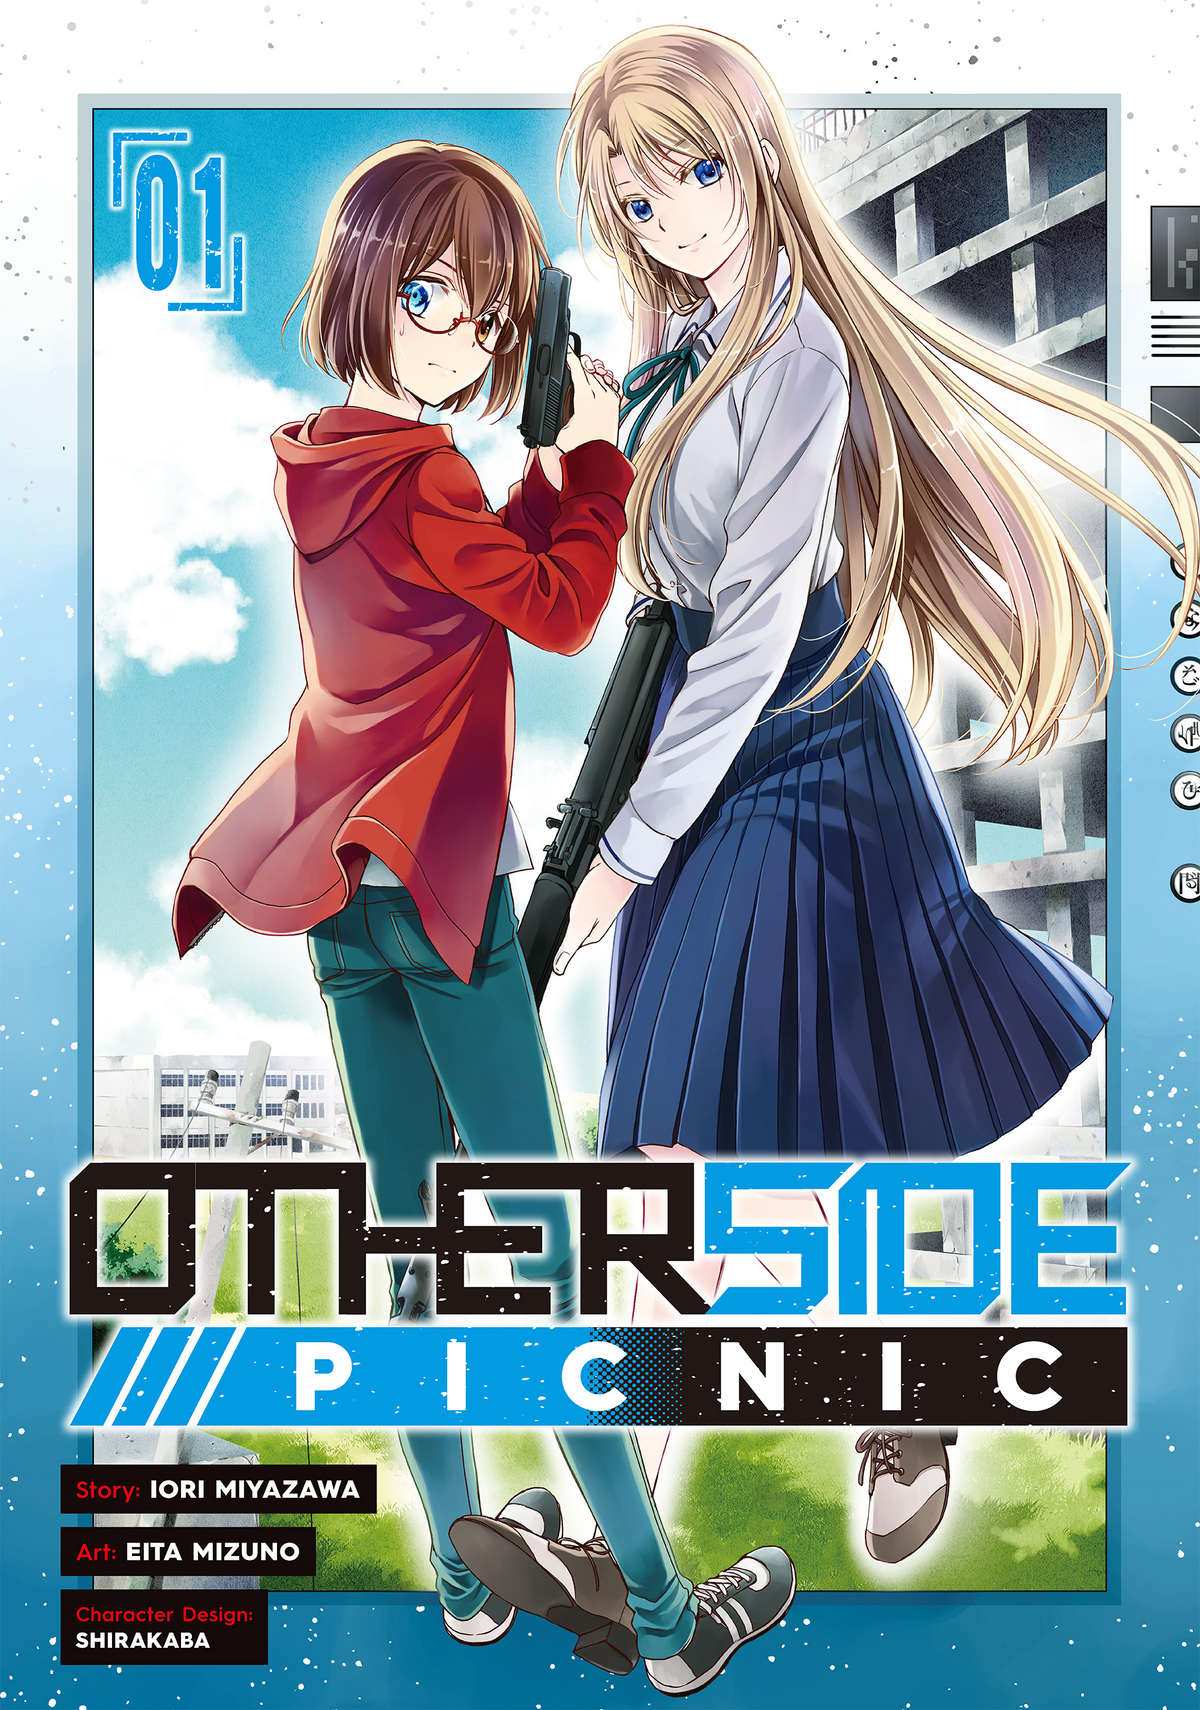 Otherside Picnic 09 (Manga) Iori Miyazawa 9781646092291 